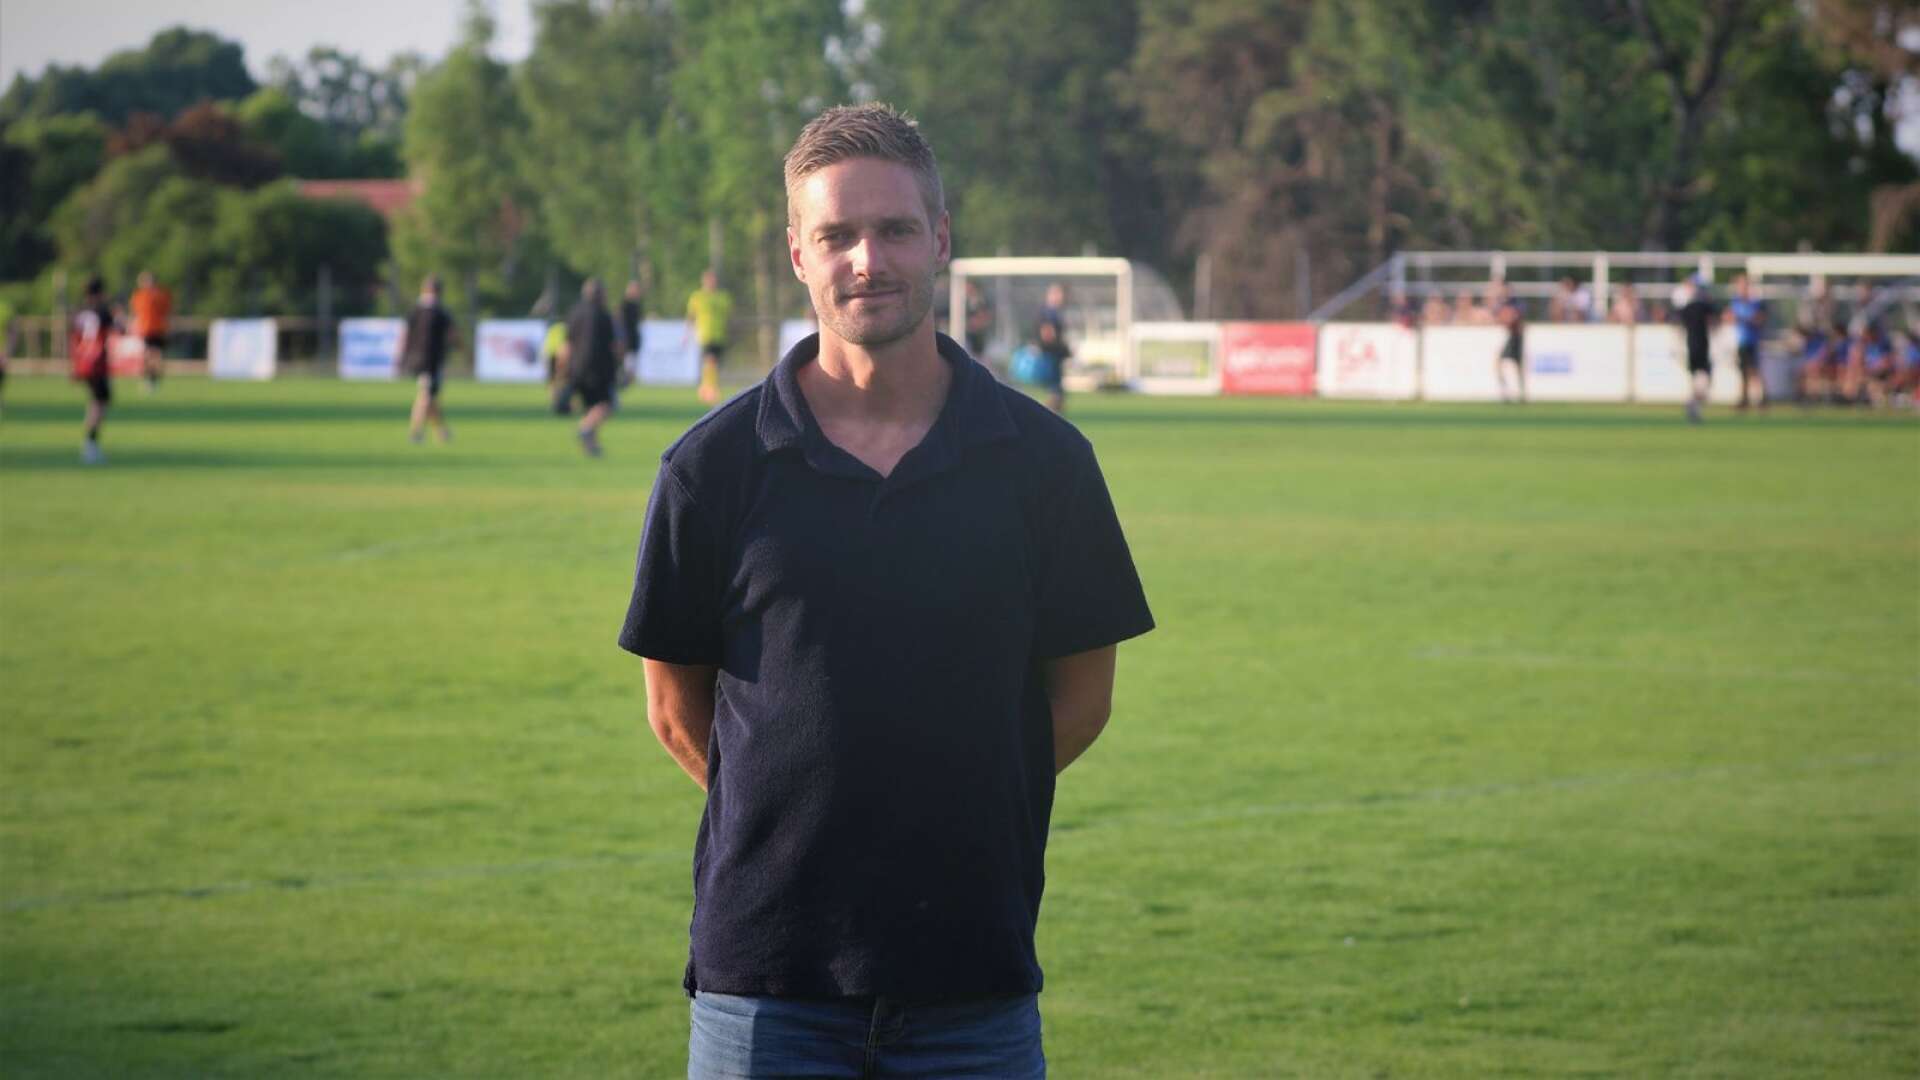 Johan Mårtensson är hemma i Sverige igen efter proffsspel i Grekland. Hans kontrakt med Panetolikos FC går ut den 30 juni och det återstår att se var fotbollskarriären går vidare. Skövde AIK är ett av alternativen, bekräftar mittfältaren.